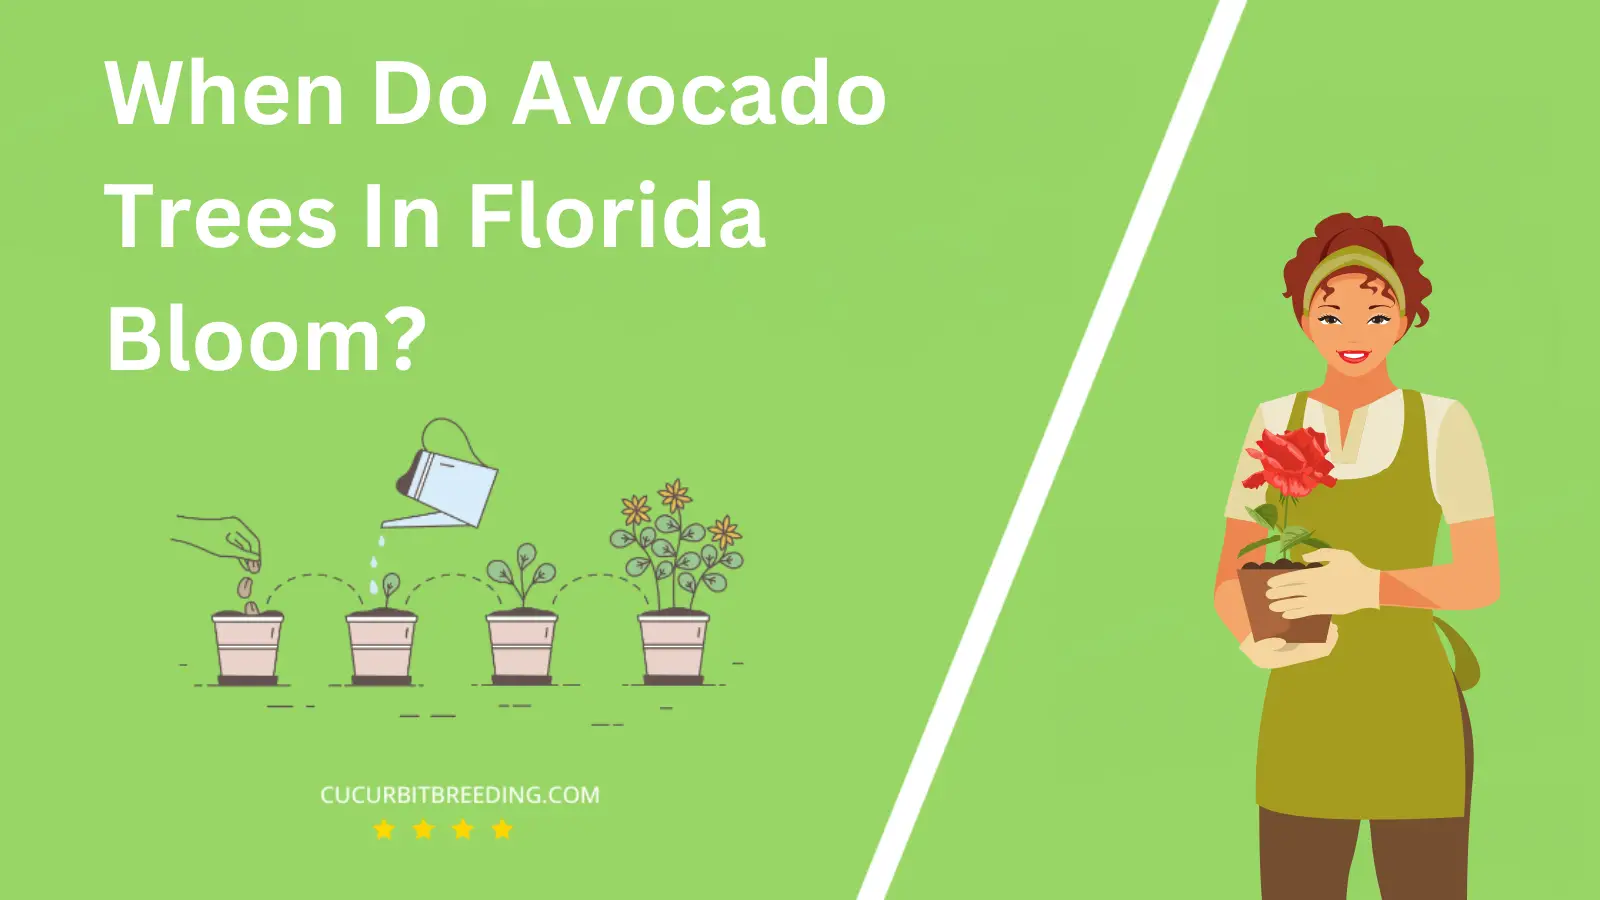 When Do Avocado Trees In Florida Bloom?